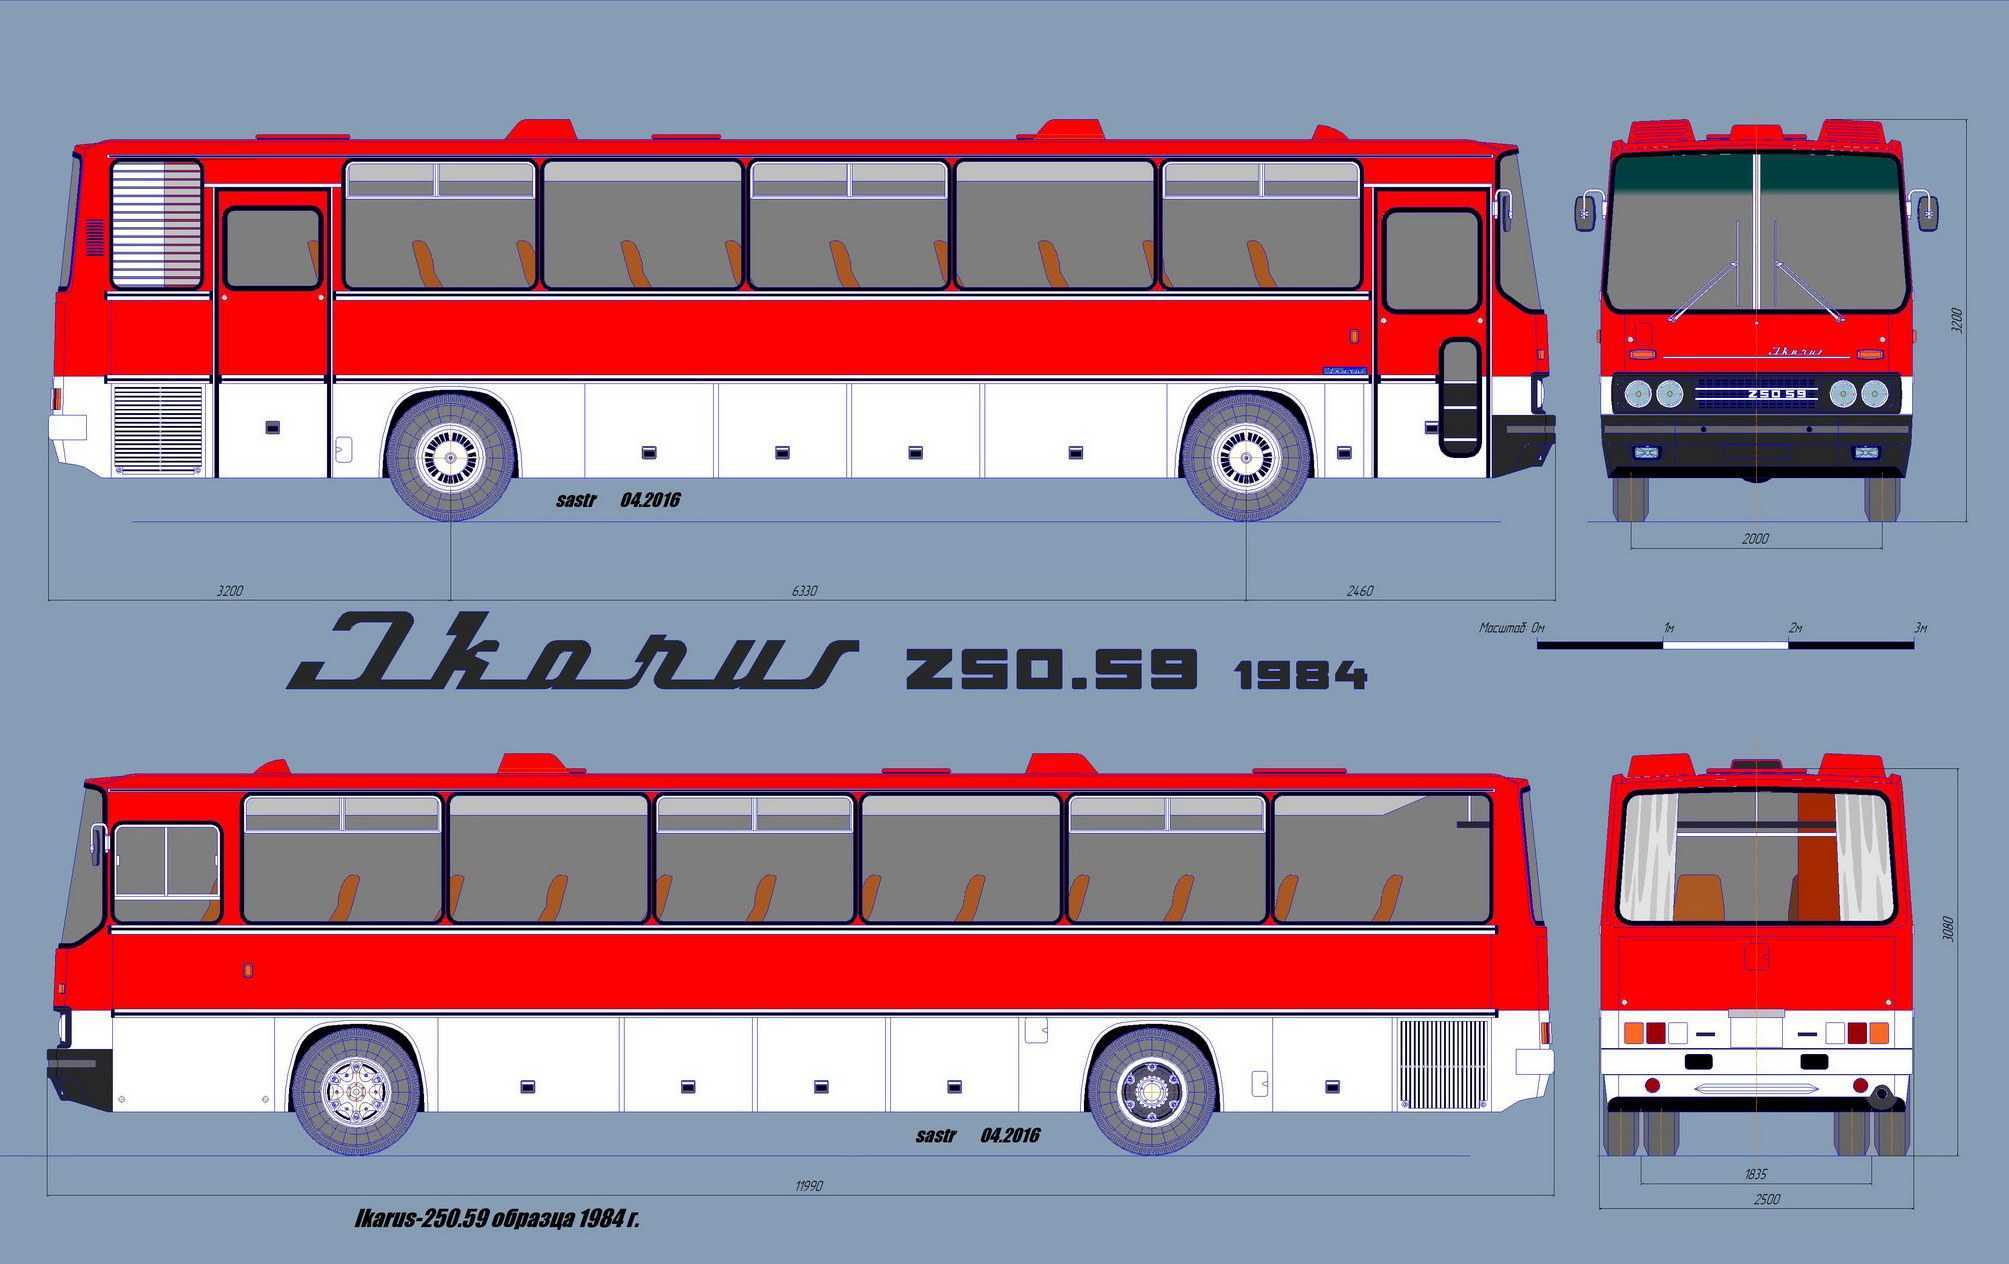 Все об автобусе икарус: модельный ряд и общие особенности